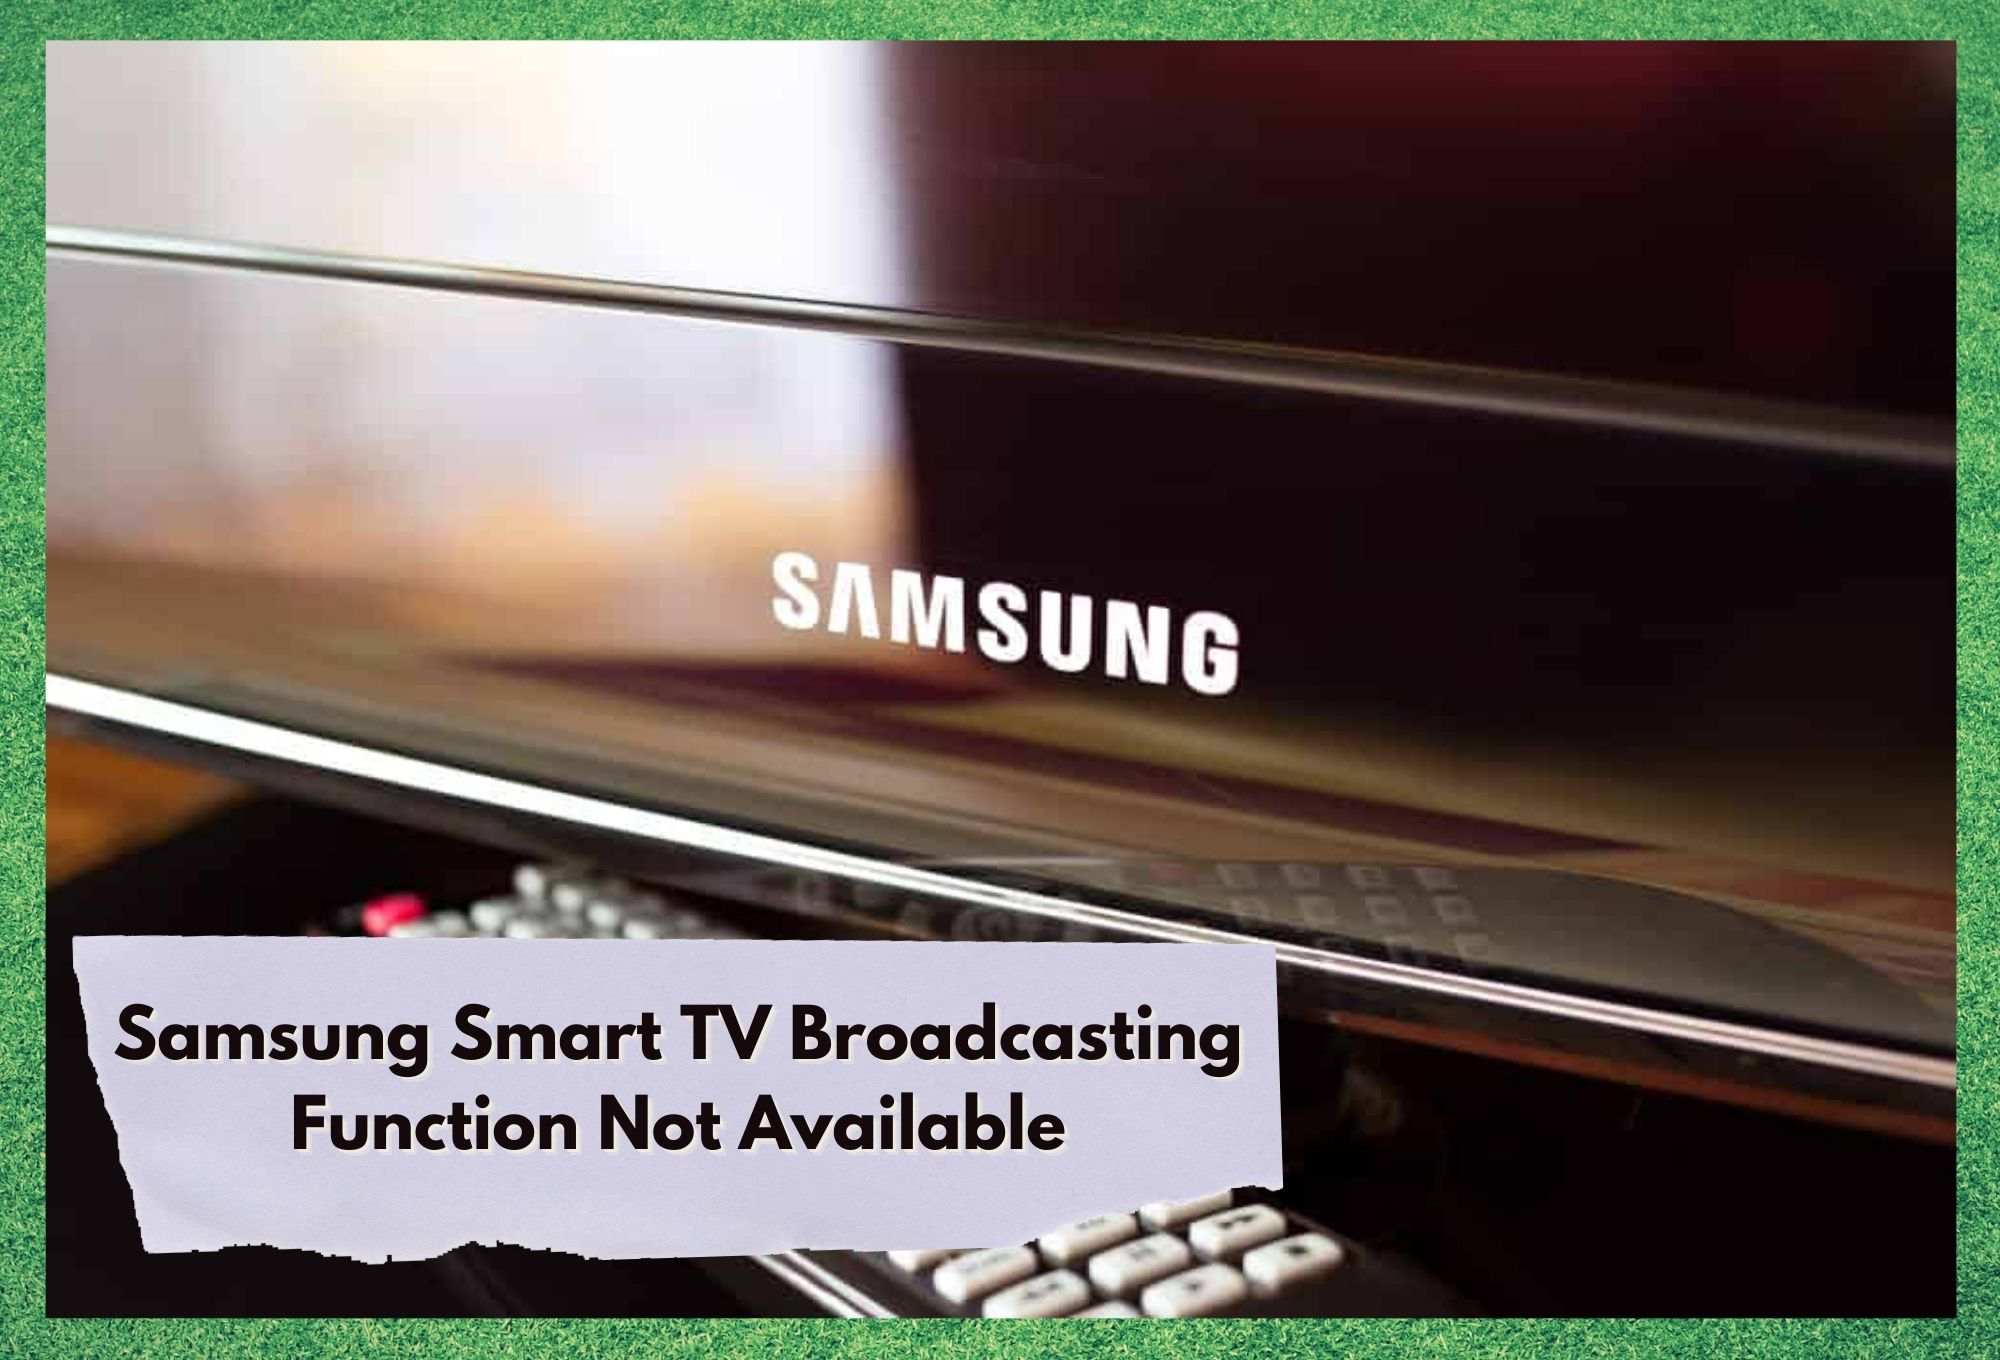 មុខងារ​ផ្សាយ​ទូរទស្សន៍​ Samsung Smart TV មិន​អាច​ប្រើ​បាន៖ 4 ជួសជុល